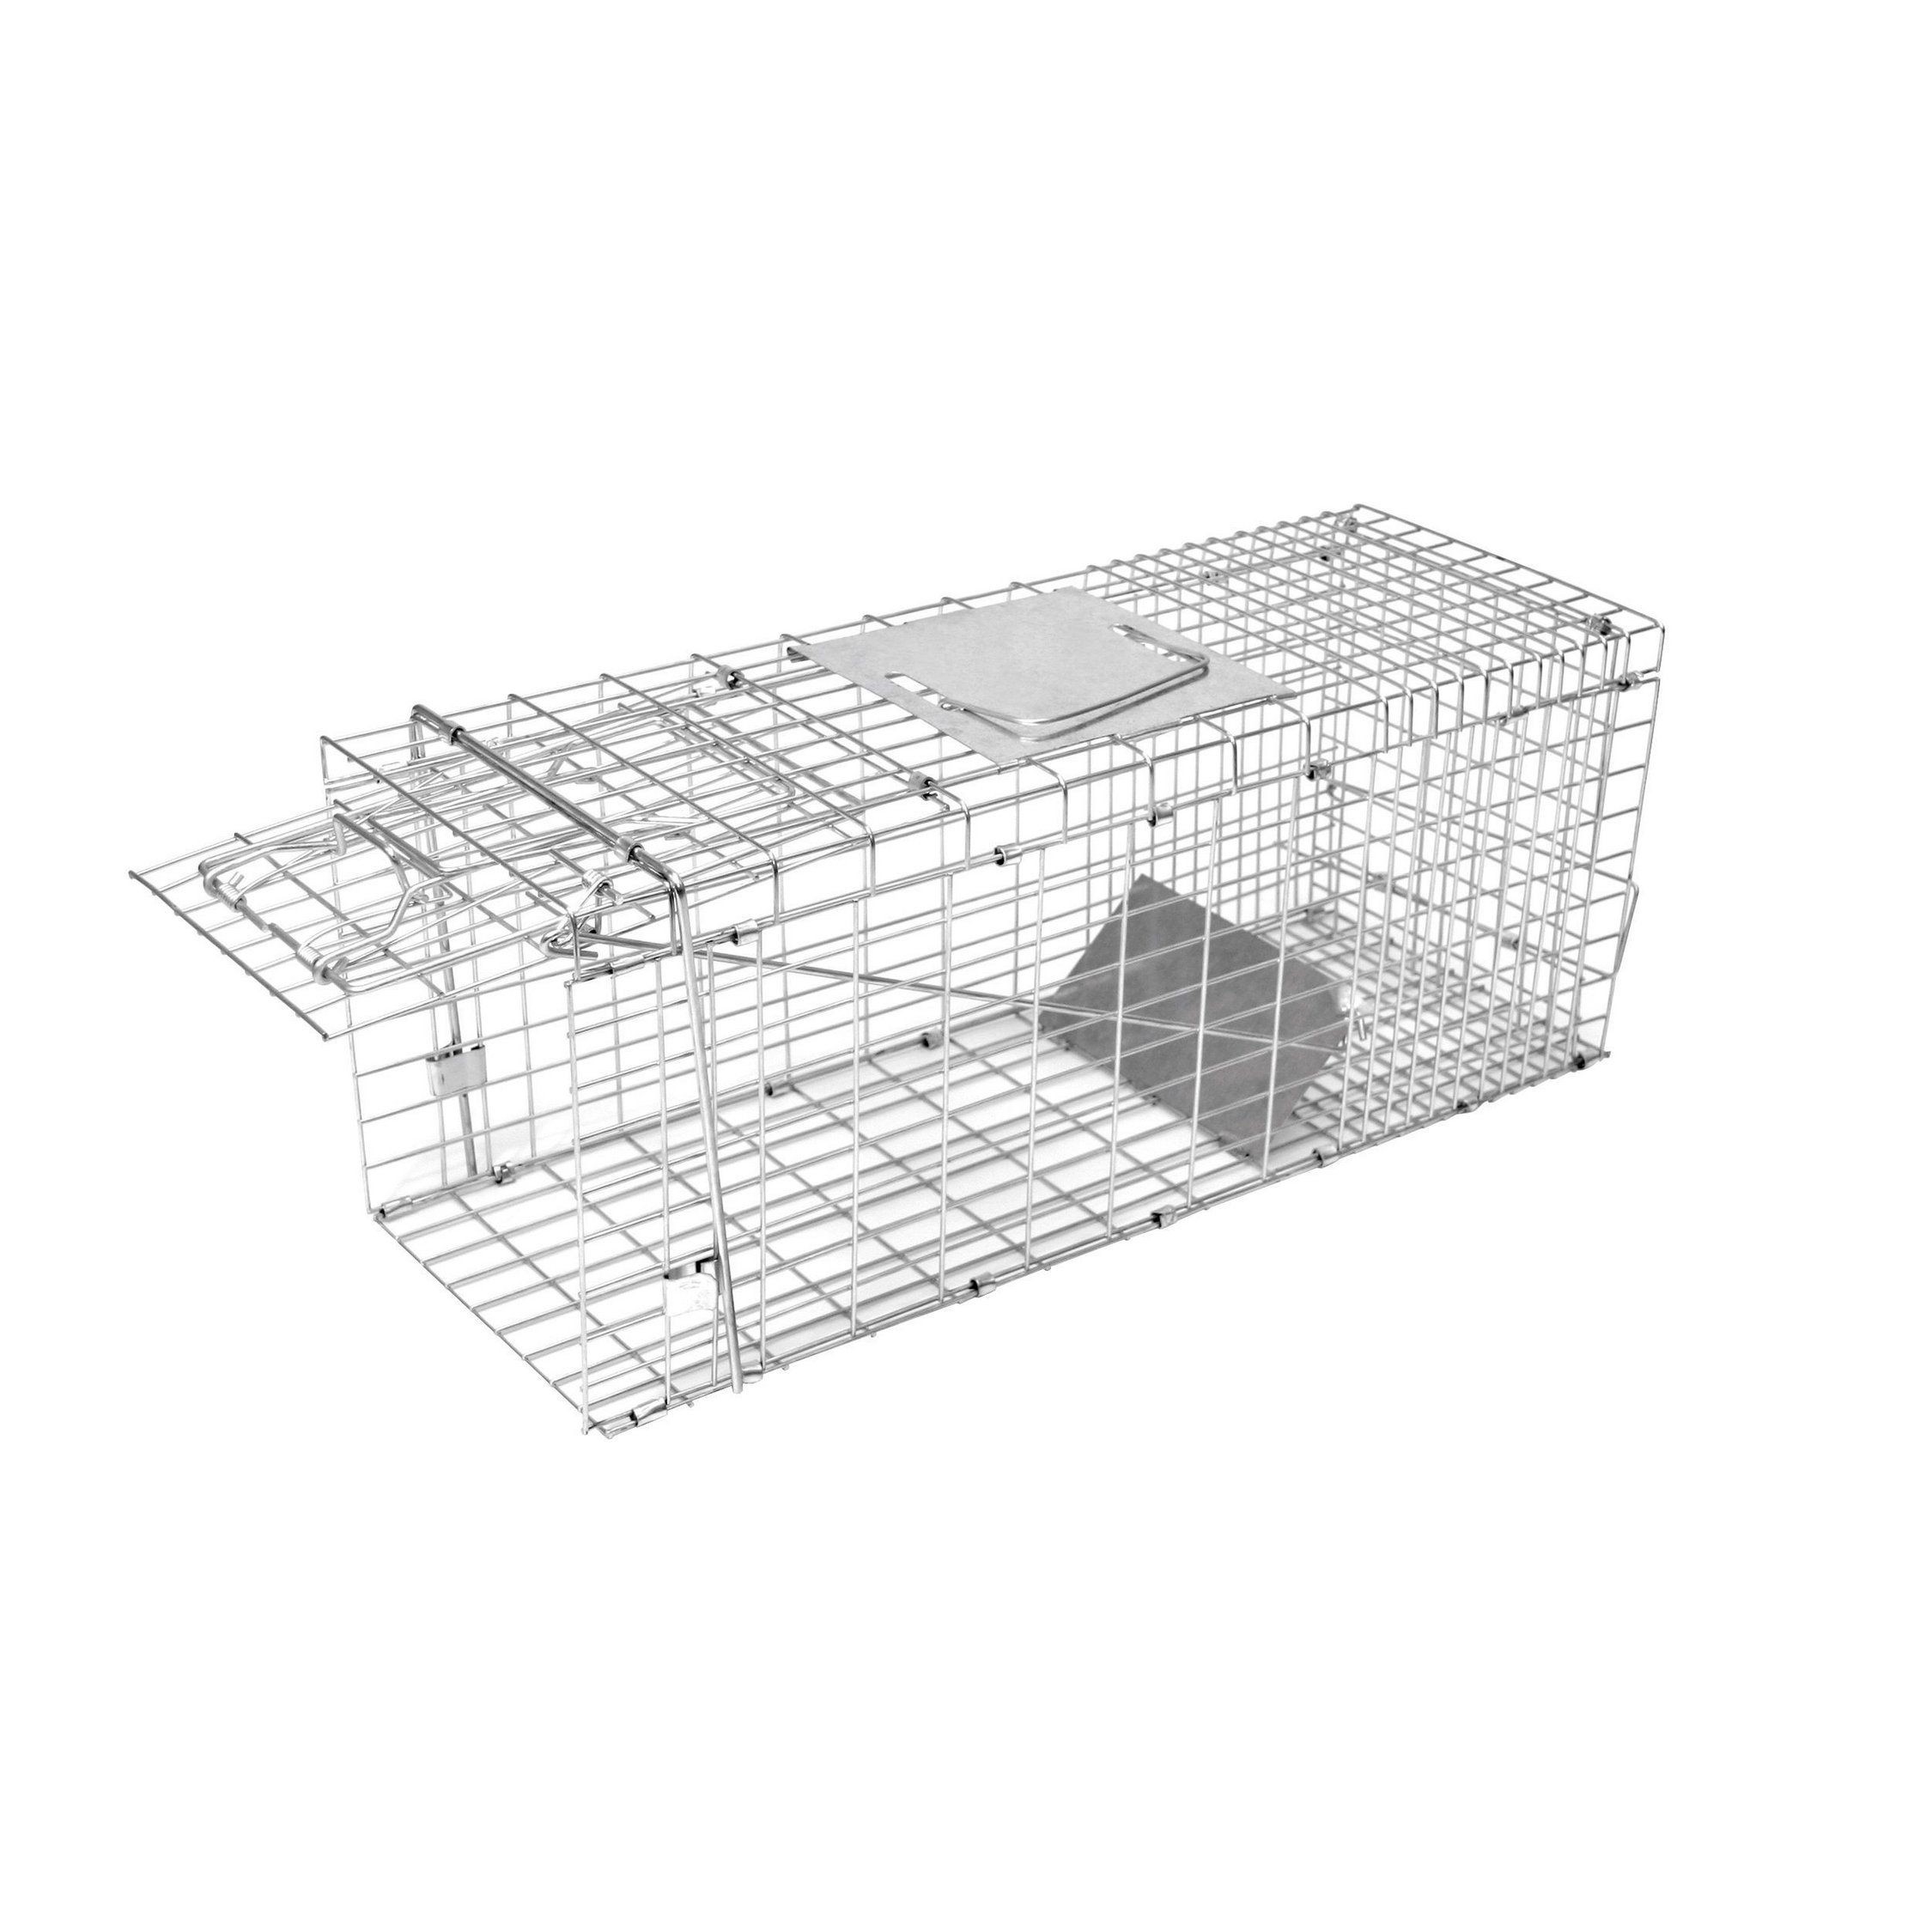 Kastenfalle Lebendfalle klappbar mit 1 Eingang 78x28x32 cm für Katzen,  Ratten, Marder, Kaninchen